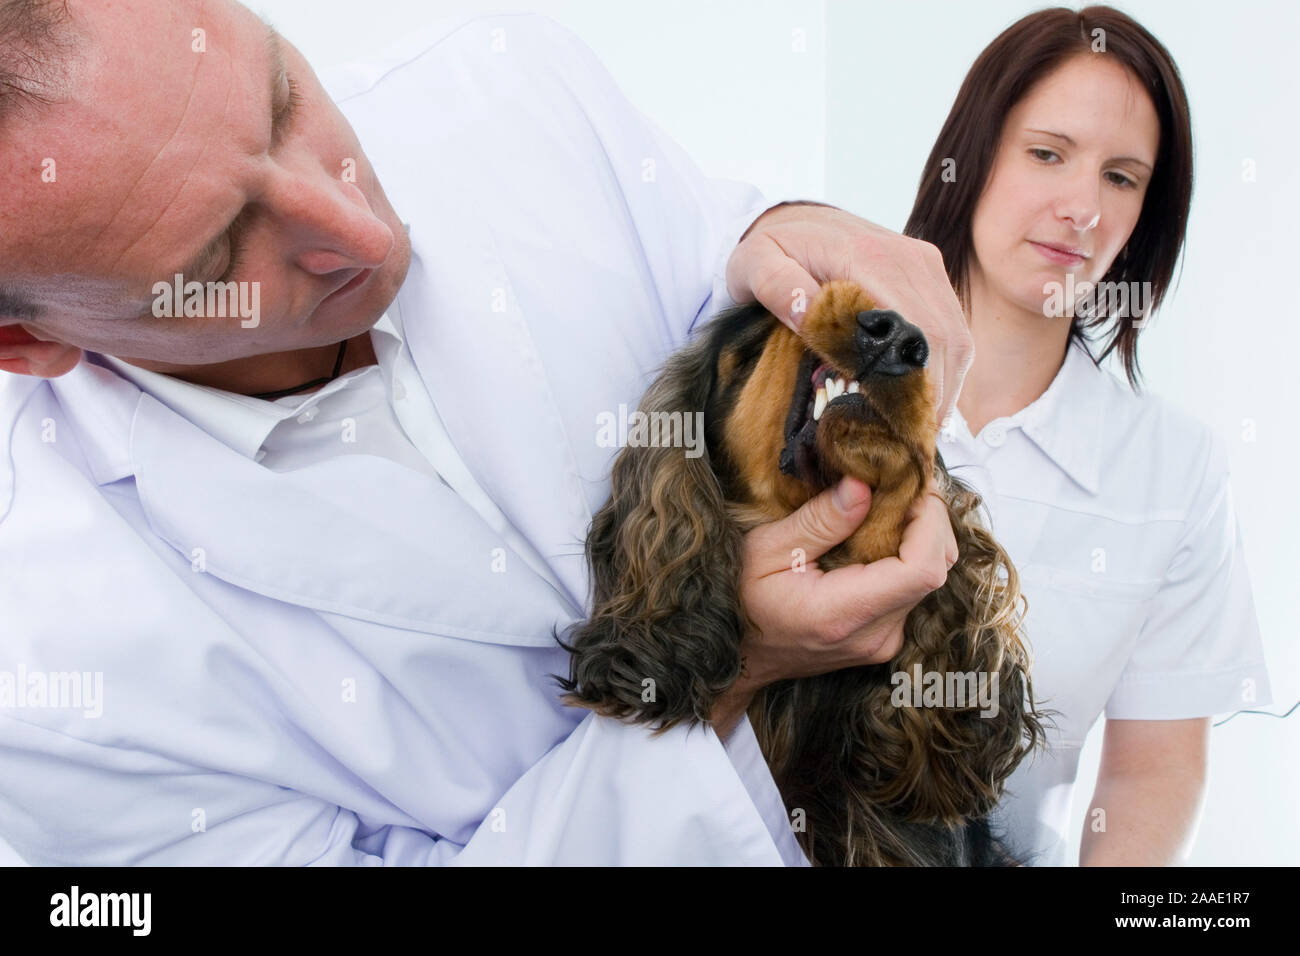 Hund bekommt Zähne untersucht (MR) Foto Stock